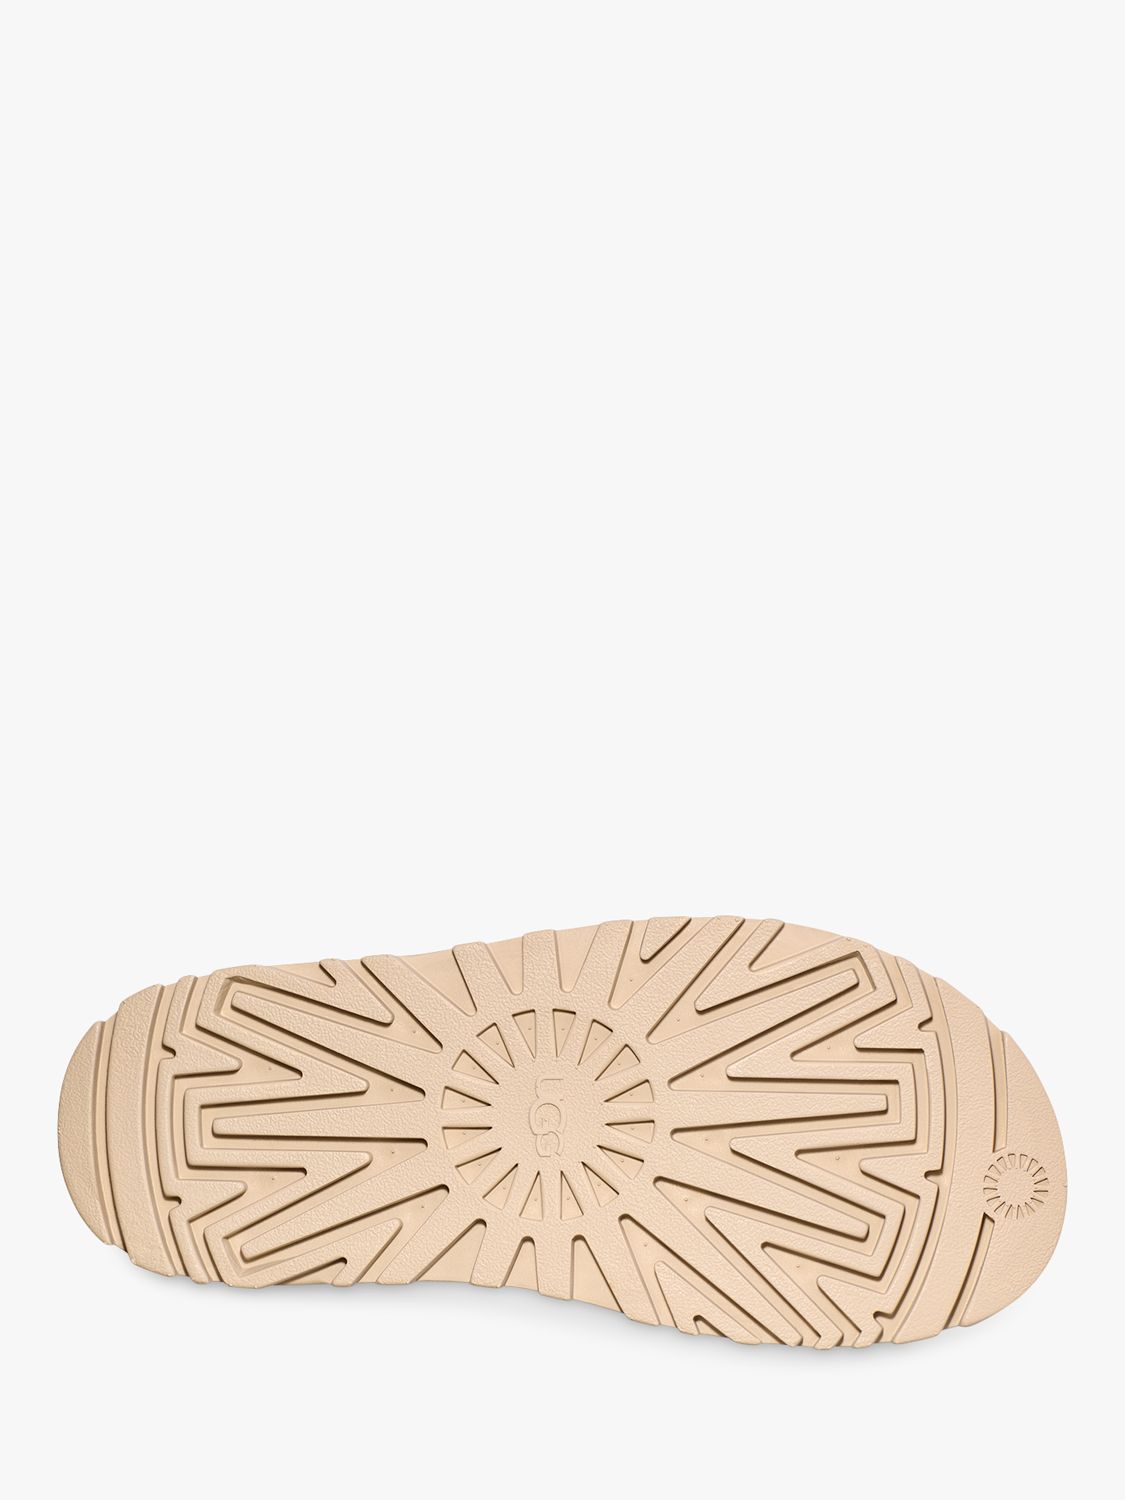 Buy UGG Goldenglow Velcro Strap Flatform Sandals Online at johnlewis.com